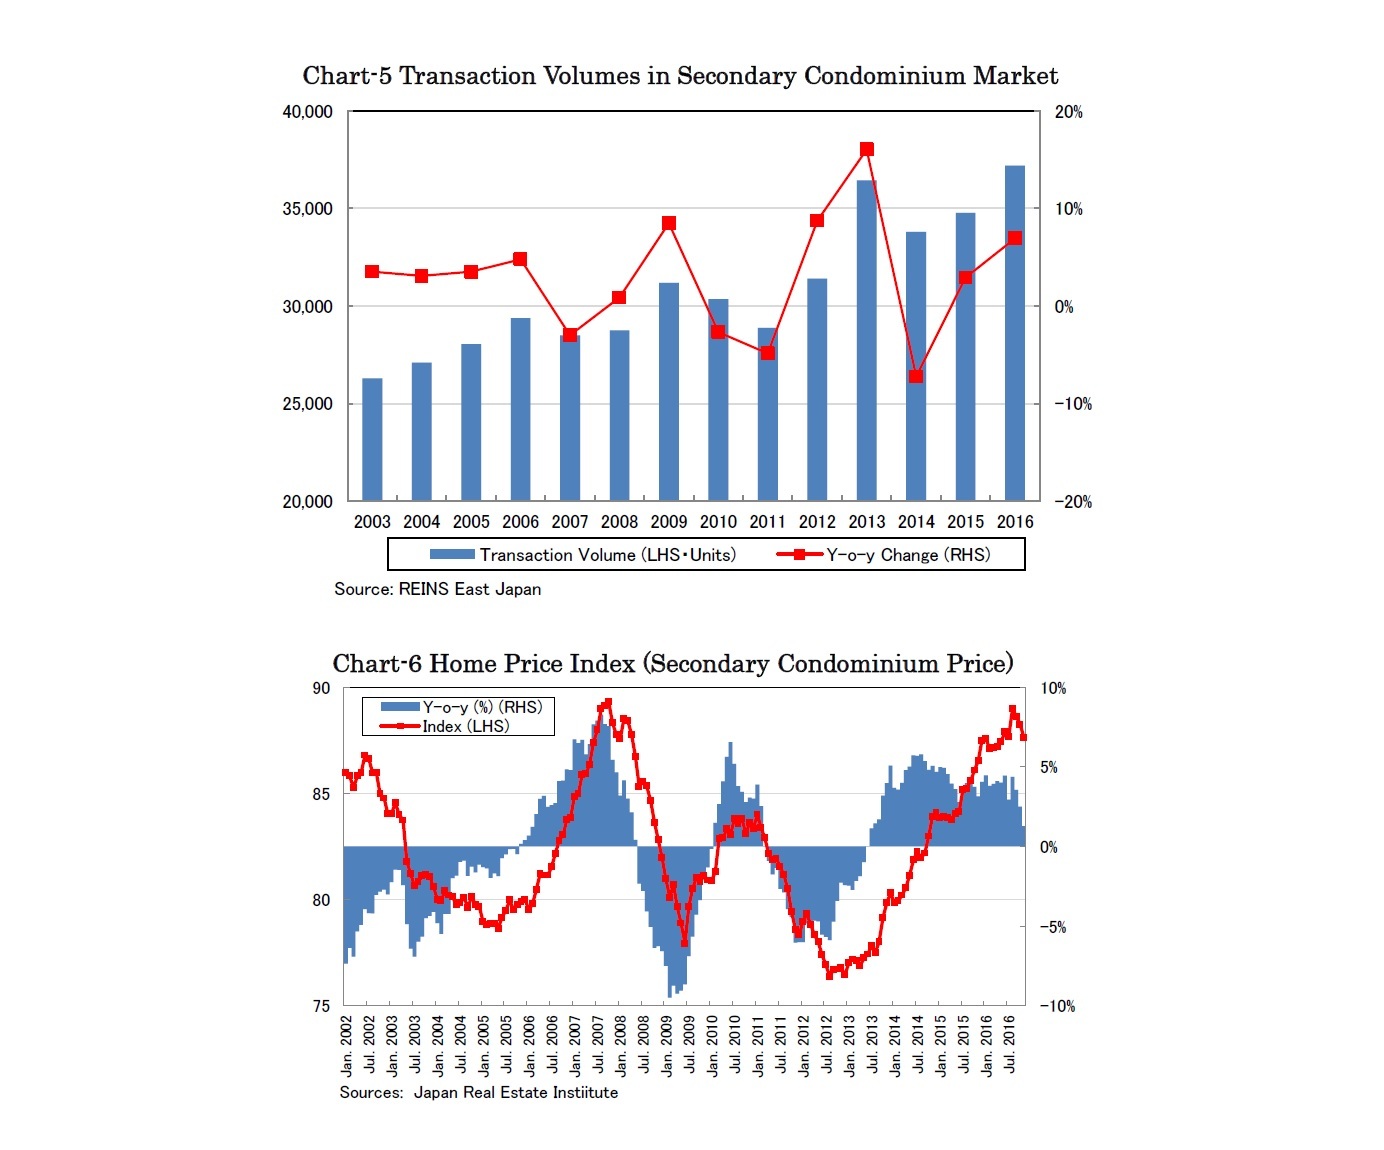 Chart-5 Transaction Volumes in Secondary Condominium Market/Chart-6 Home Price Index (Secondary Condominium Price)